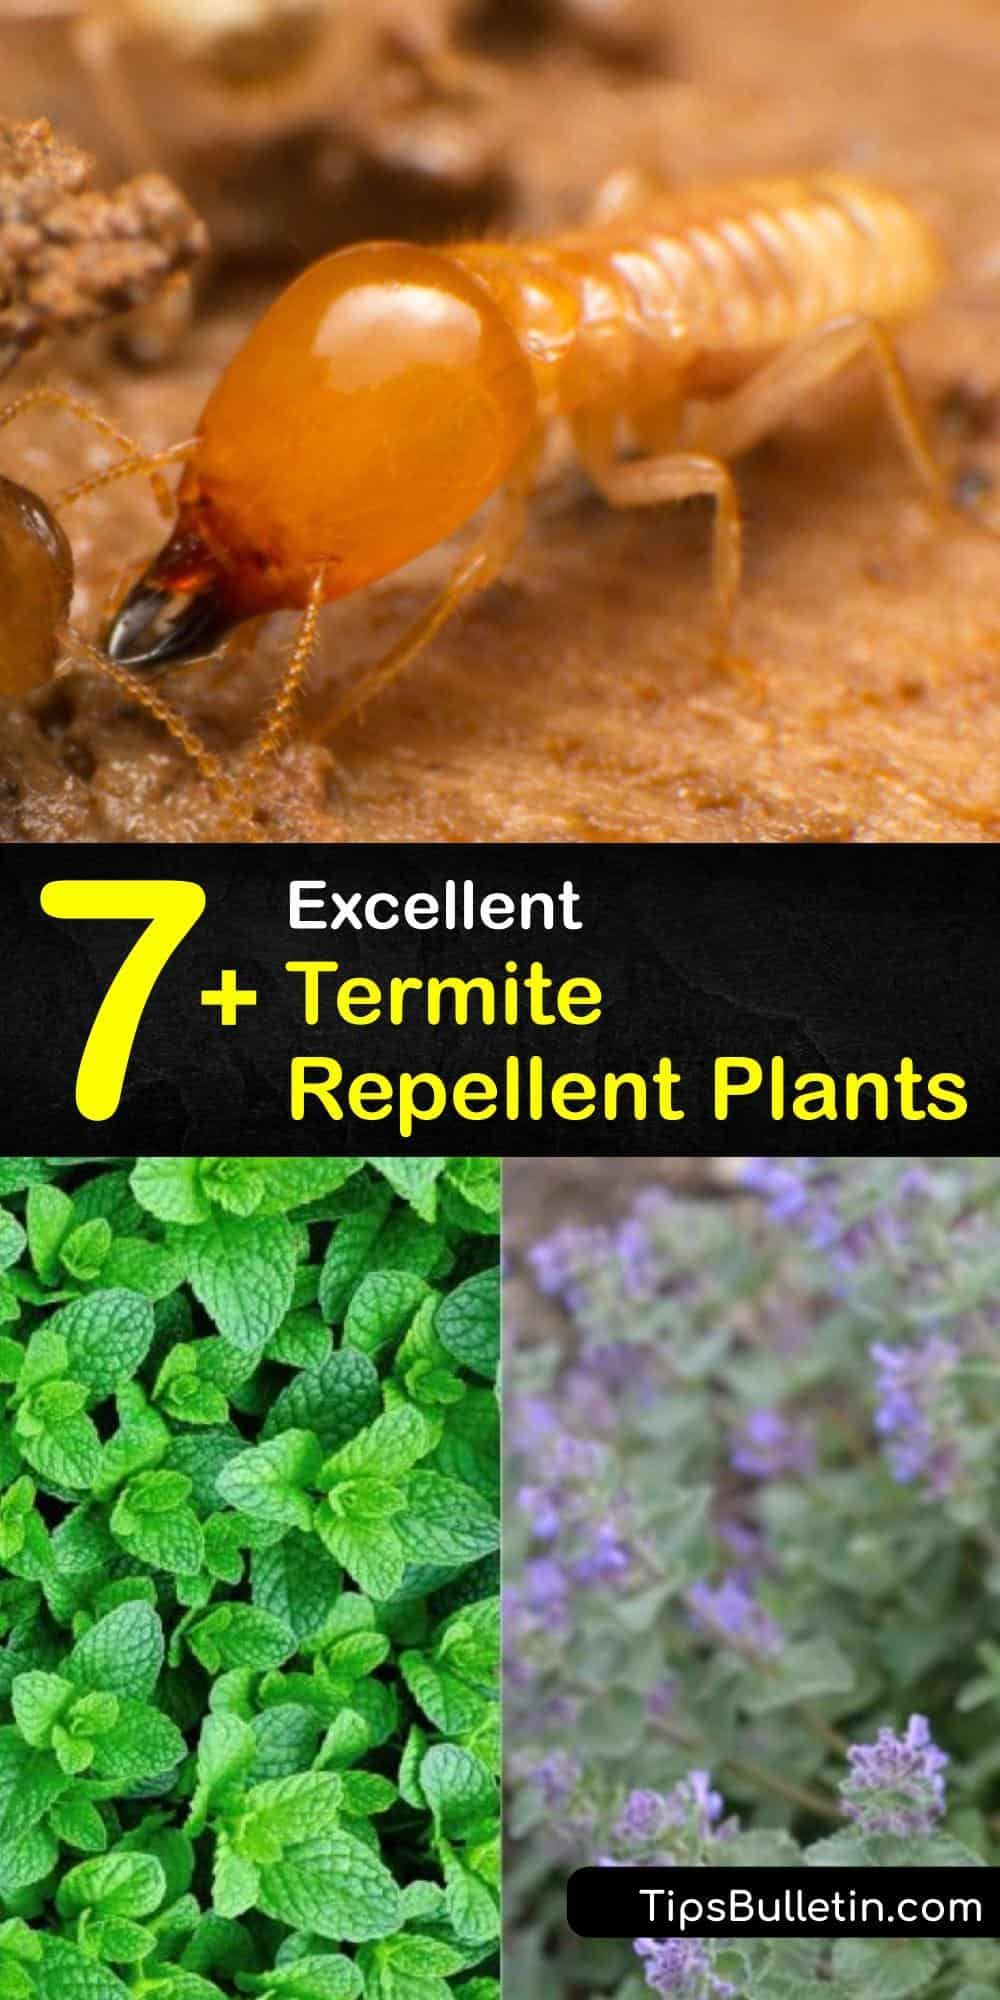 7+ Excellent Termite Repellent Plants